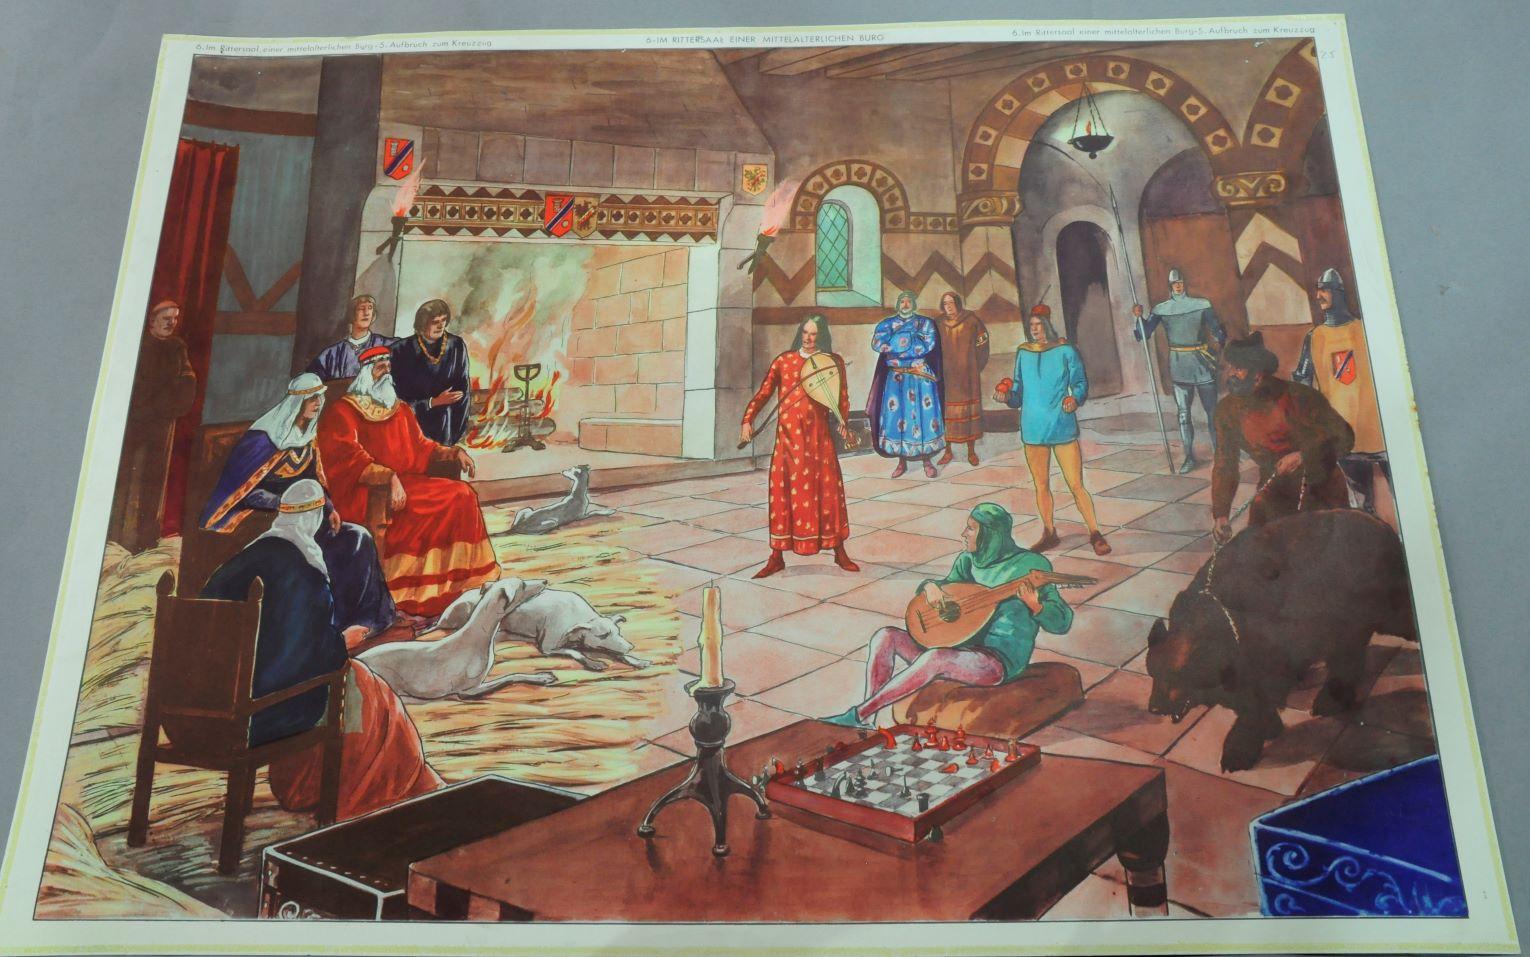 Die doppelseitige Vintage-Wandkarte zeigt den Aufbruch einiger Ritter zu den Kreuzzügen und einen großen Saal im Inneren einer mittelalterlichen Burg. Bunter Druck auf Papier.
Abmessungen:
Breite 76 cm (29,91 Zoll)
Höhe 56cm (22.05